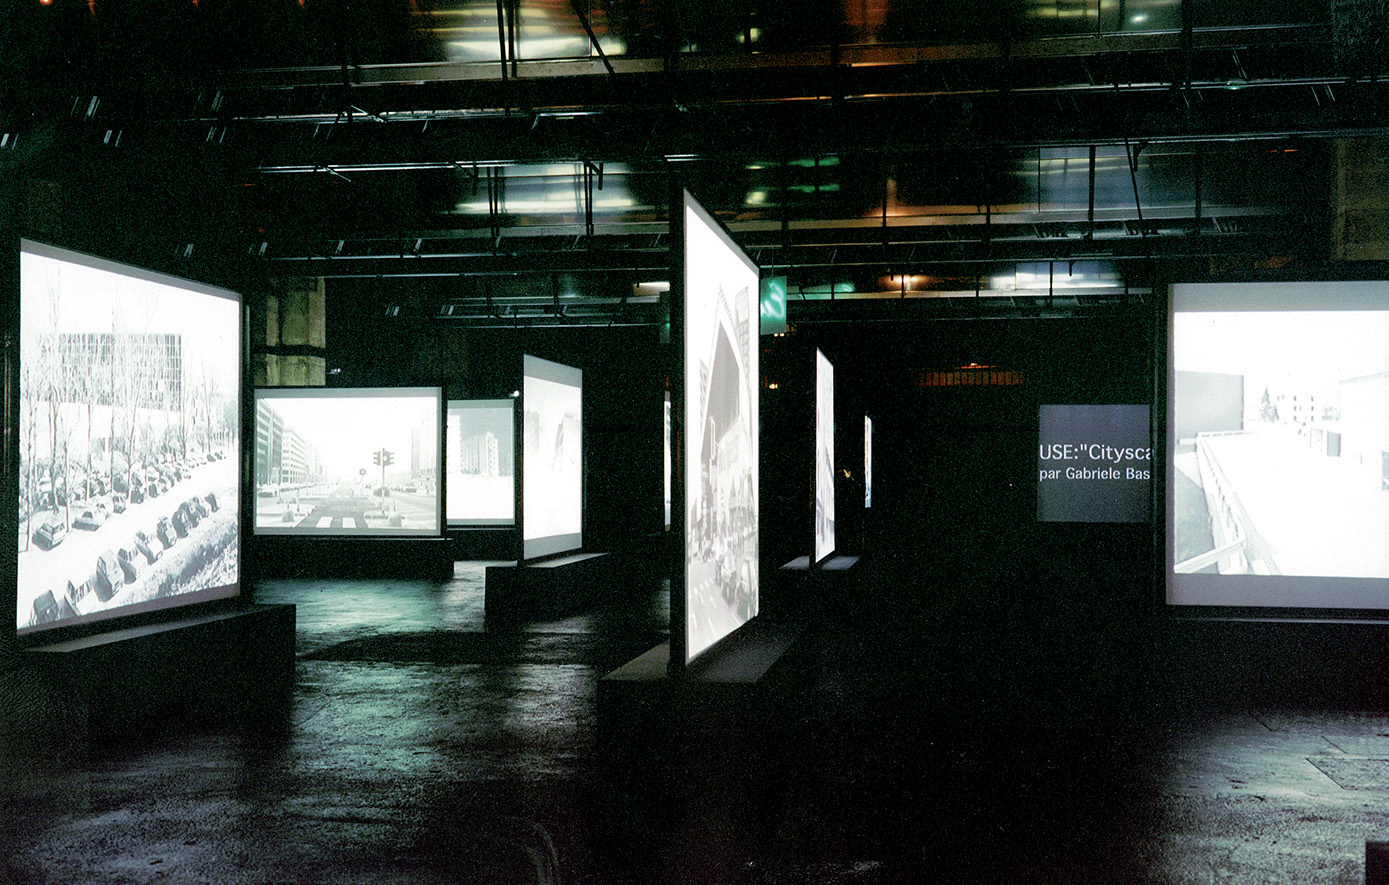 Stefano Boeri, USE - Uncertain States of Europe, Bordeaux, 2000. Installazione per la mostra Mutations. Multiplicity, Milano.